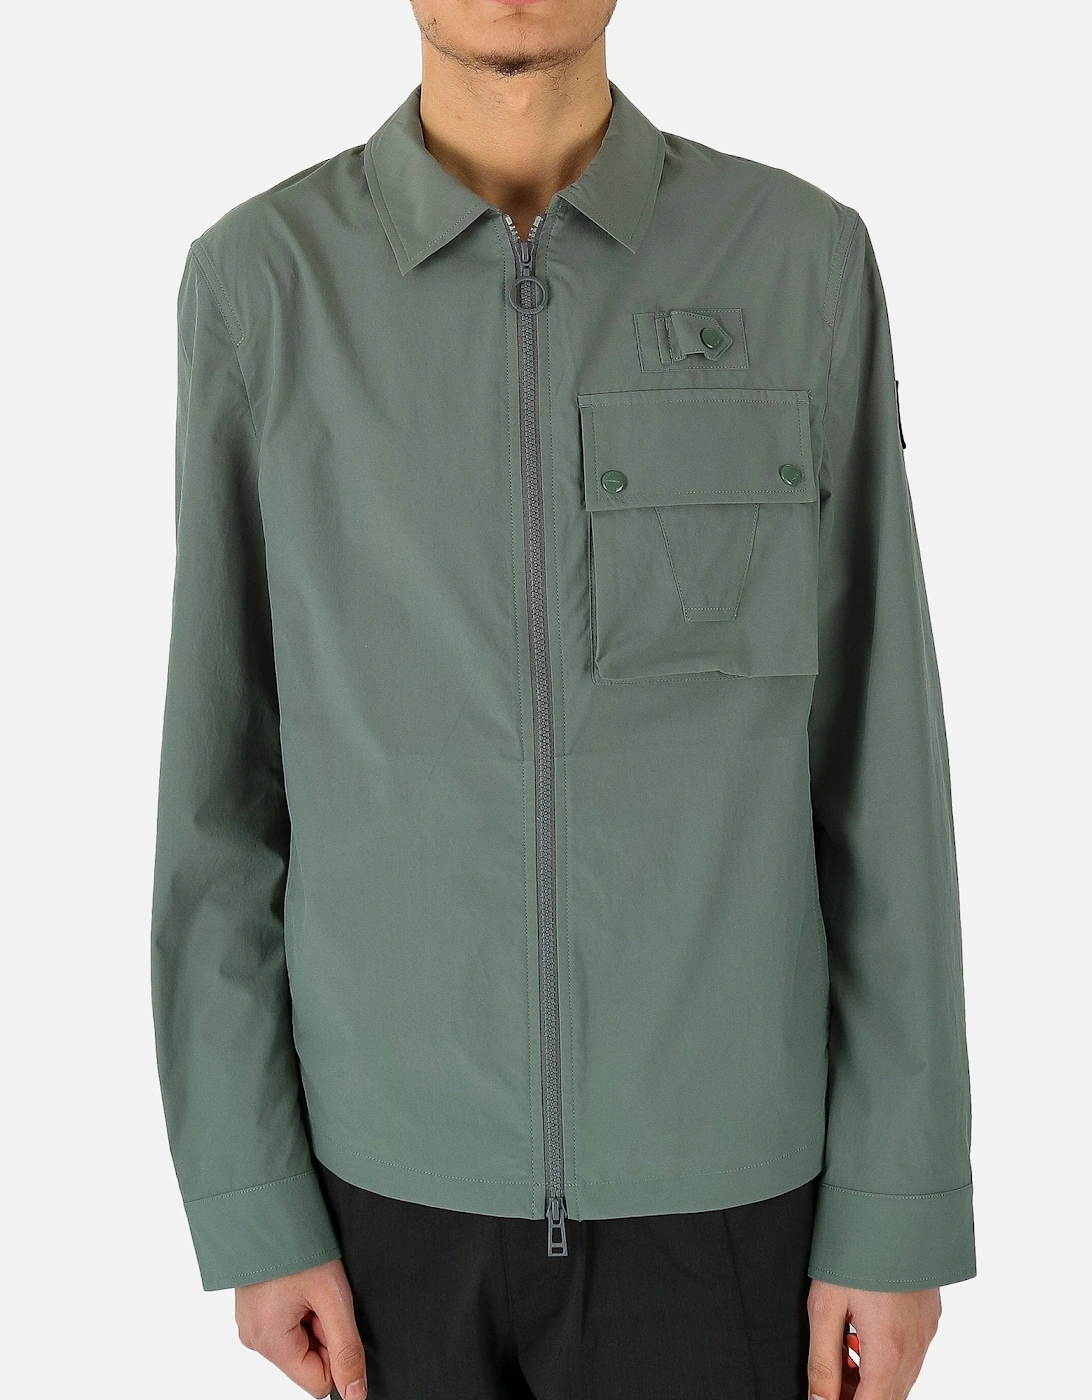 Castmaster Zip Green Overshirt Jacket, 5 of 4